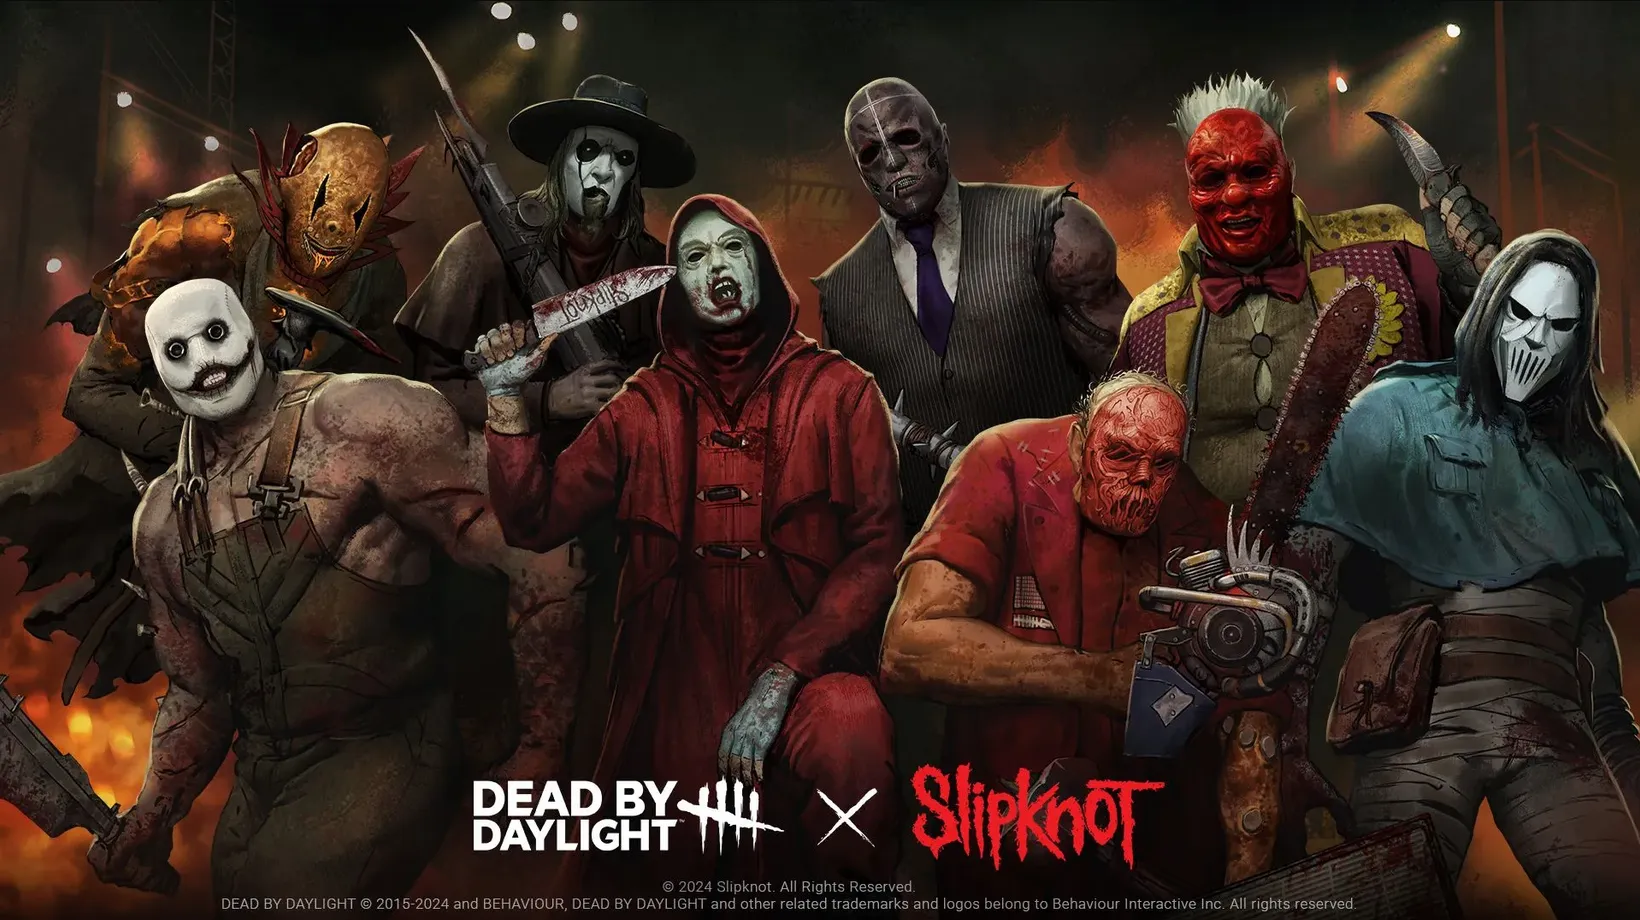 Slipknot i Dead by Daylight? Wkrocz do gry i przywdziej maski członków kapeli!